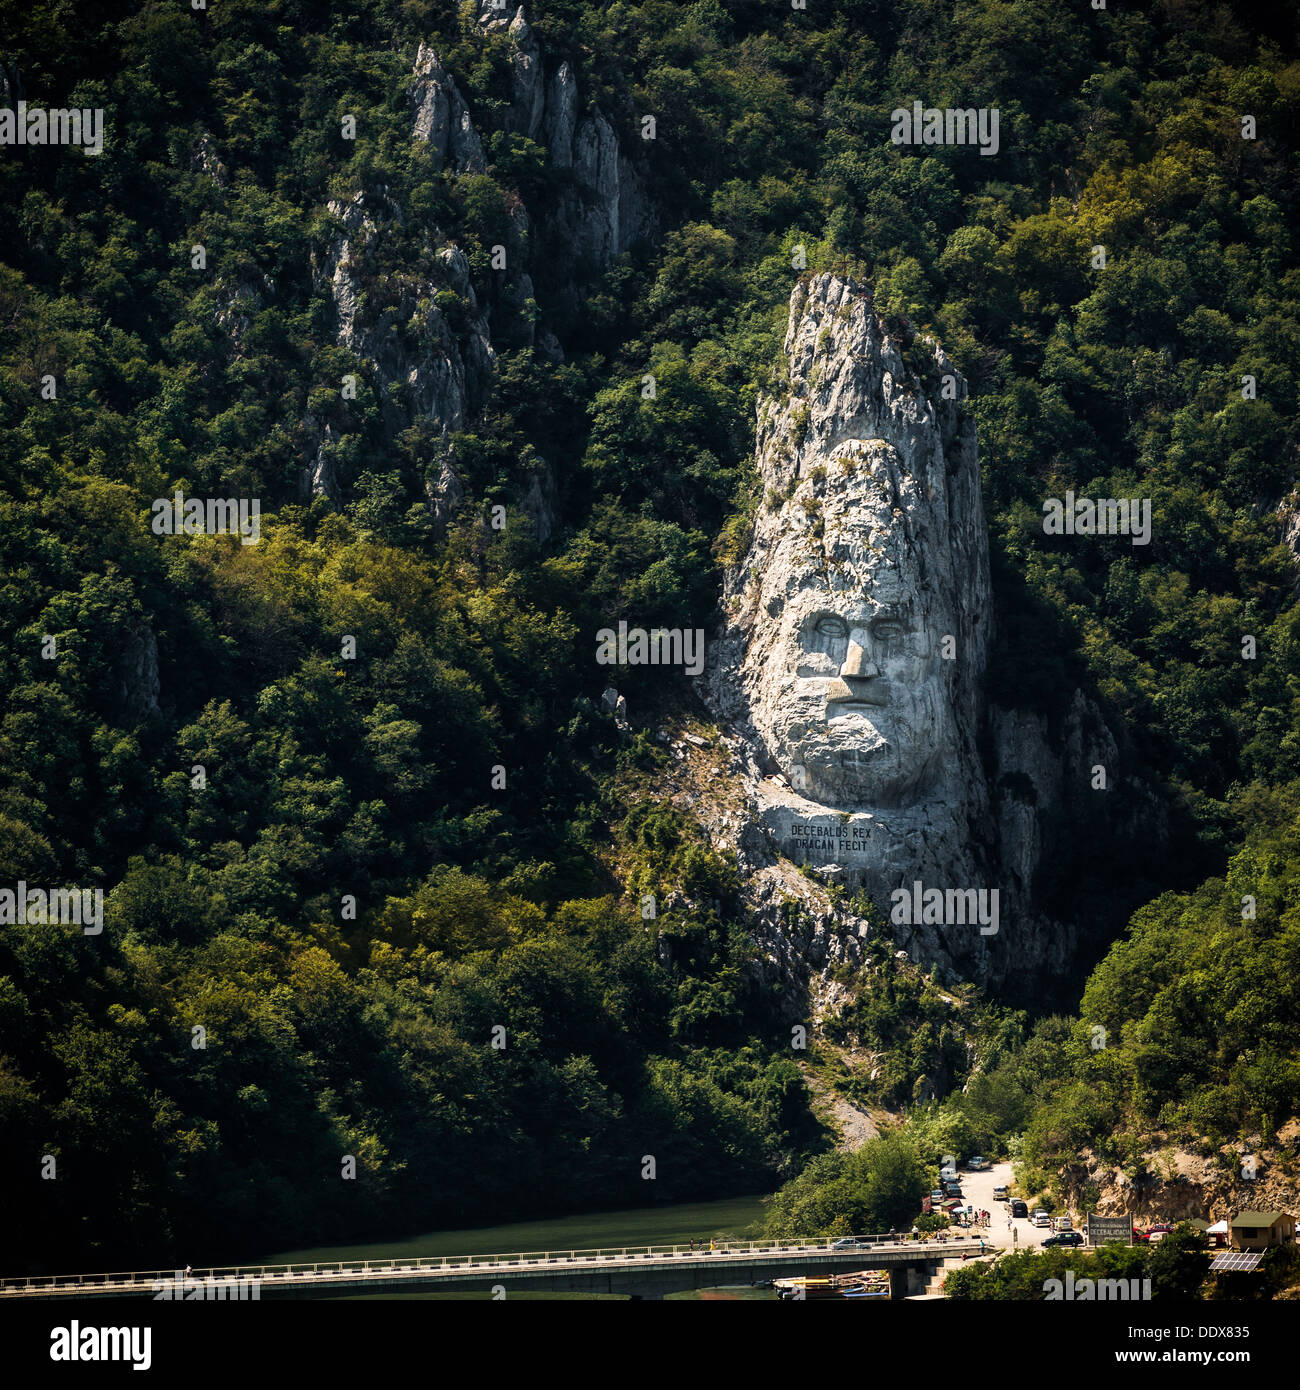 La statue de Decebalus, le Roi des Daces, taillée dans la roche de la montagne au-dessus de la vallée du Danube, en Roumanie. Banque D'Images